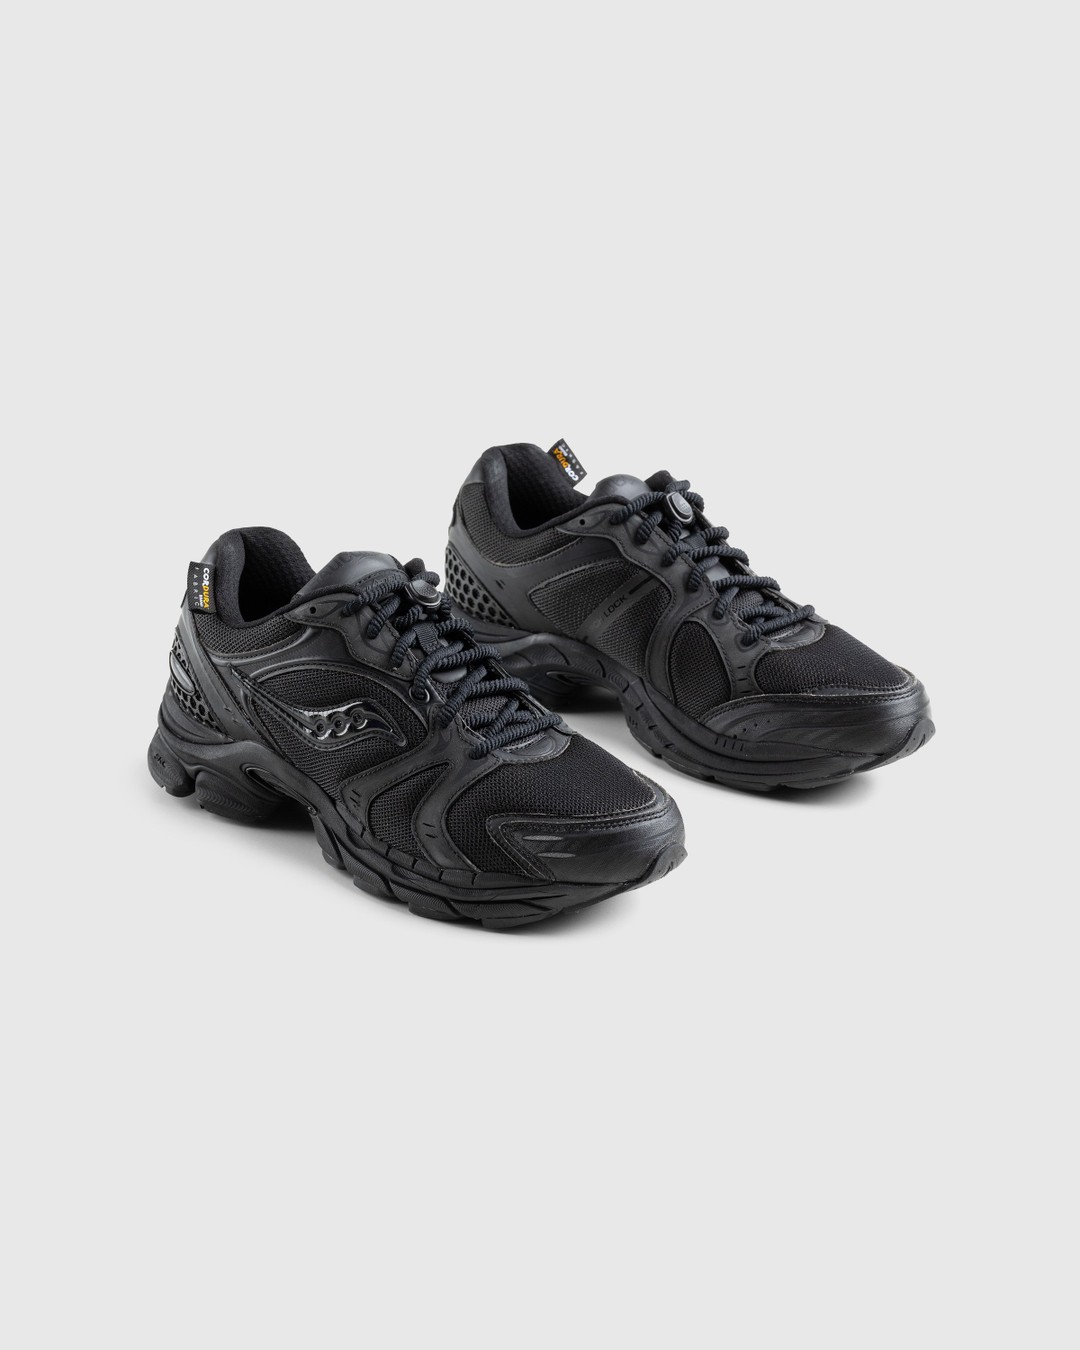 Saucony – ProGrid Triumph 4 Black - Sneakers - Black - Image 4